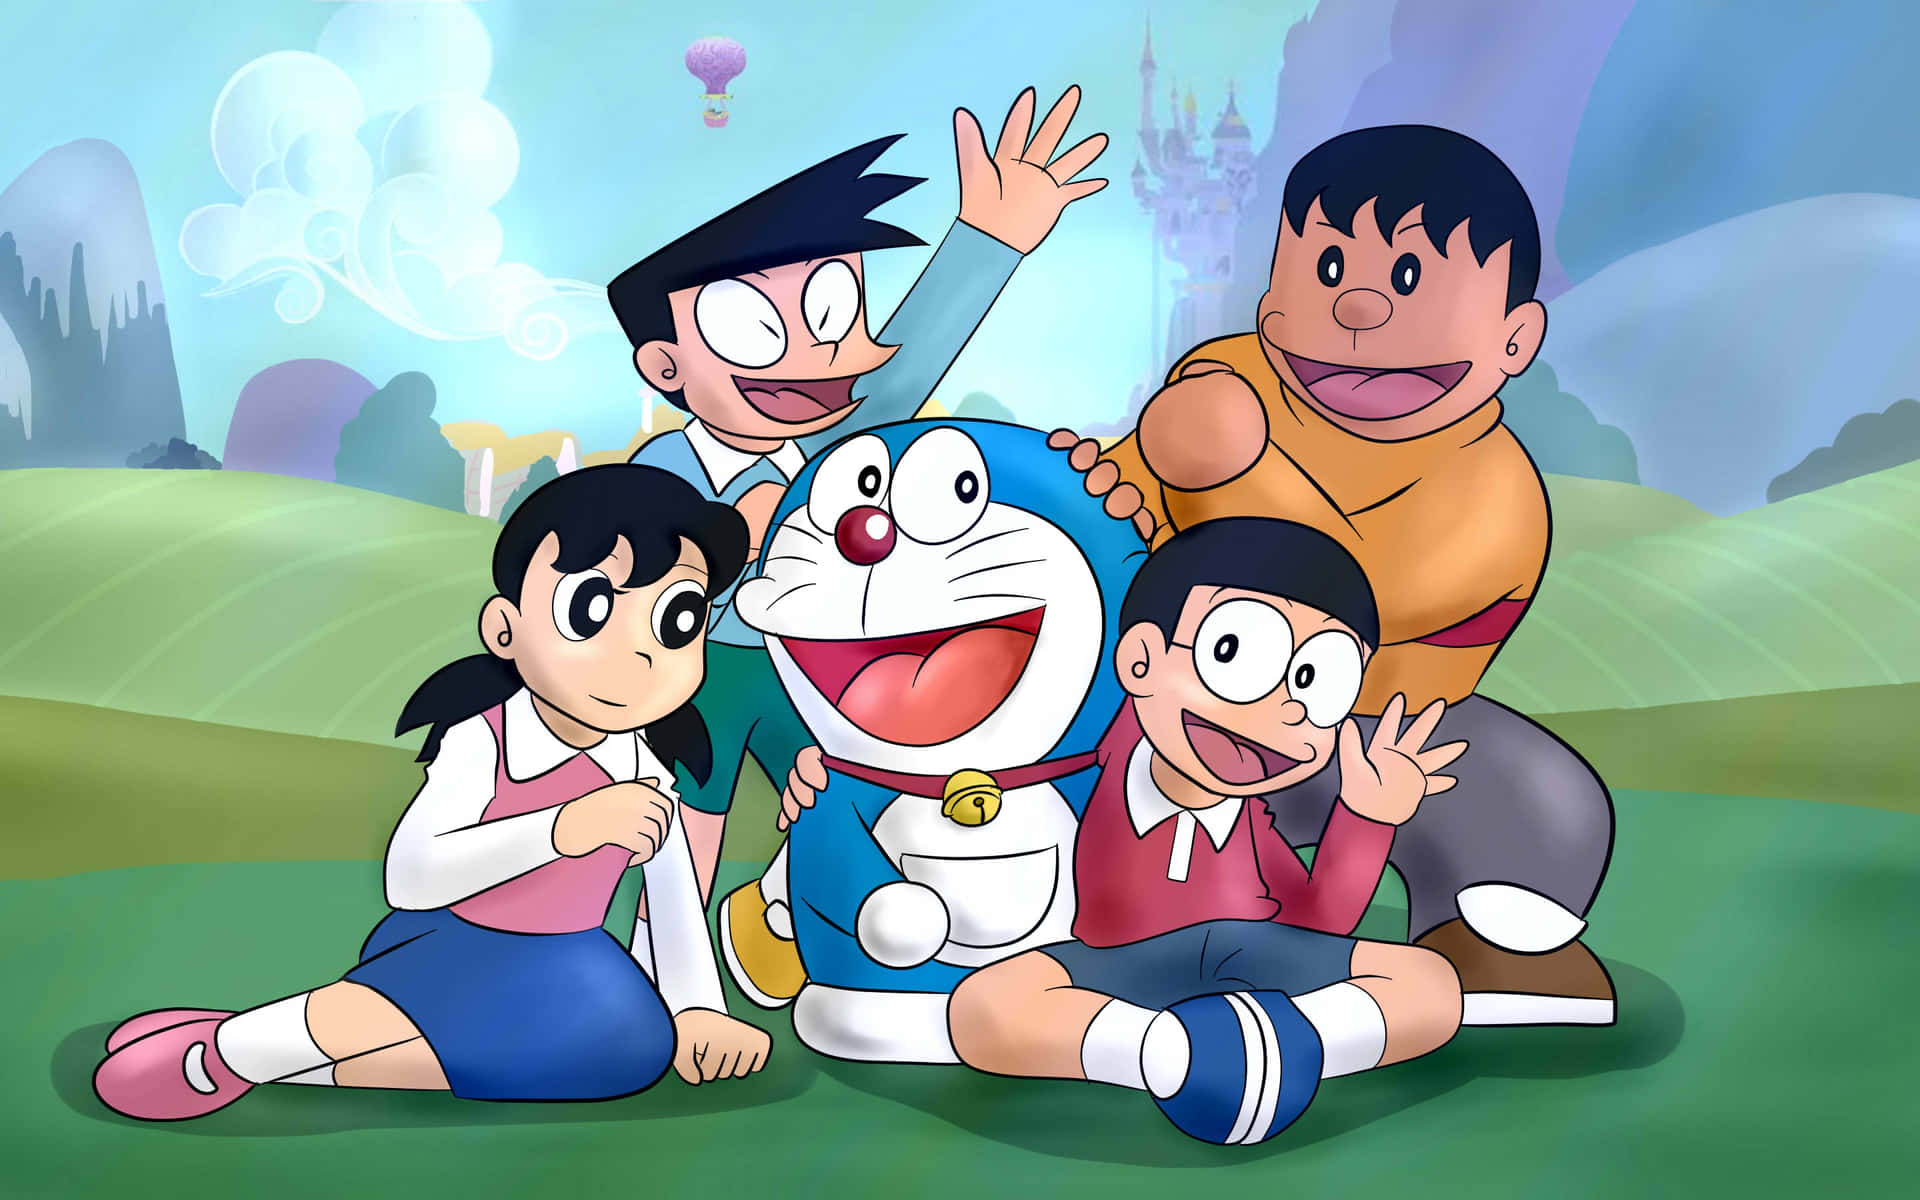 Personajesde Dibujos Animados De Doraemon Posando Delante De Un Castillo.